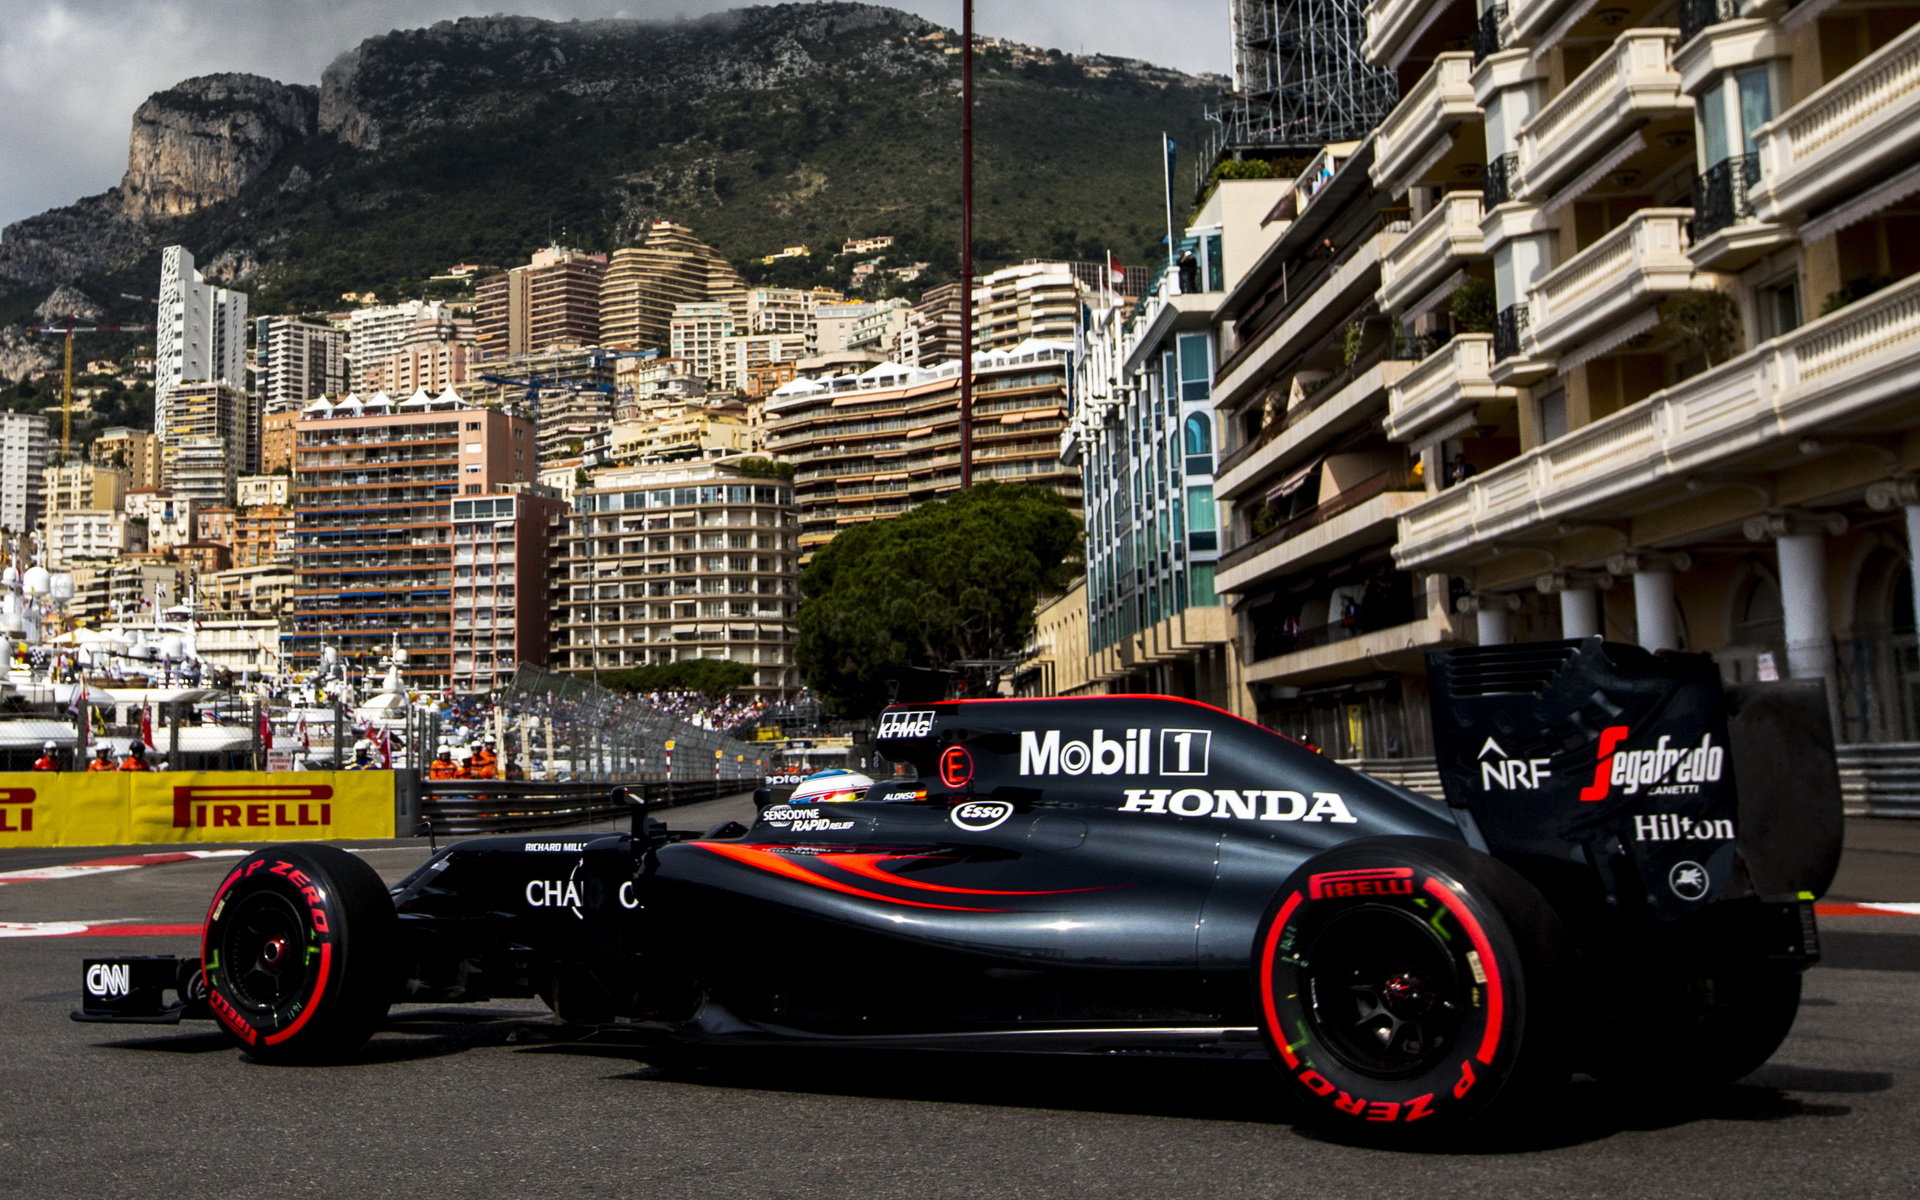 Fernando Alonso při tréninku v Monaku